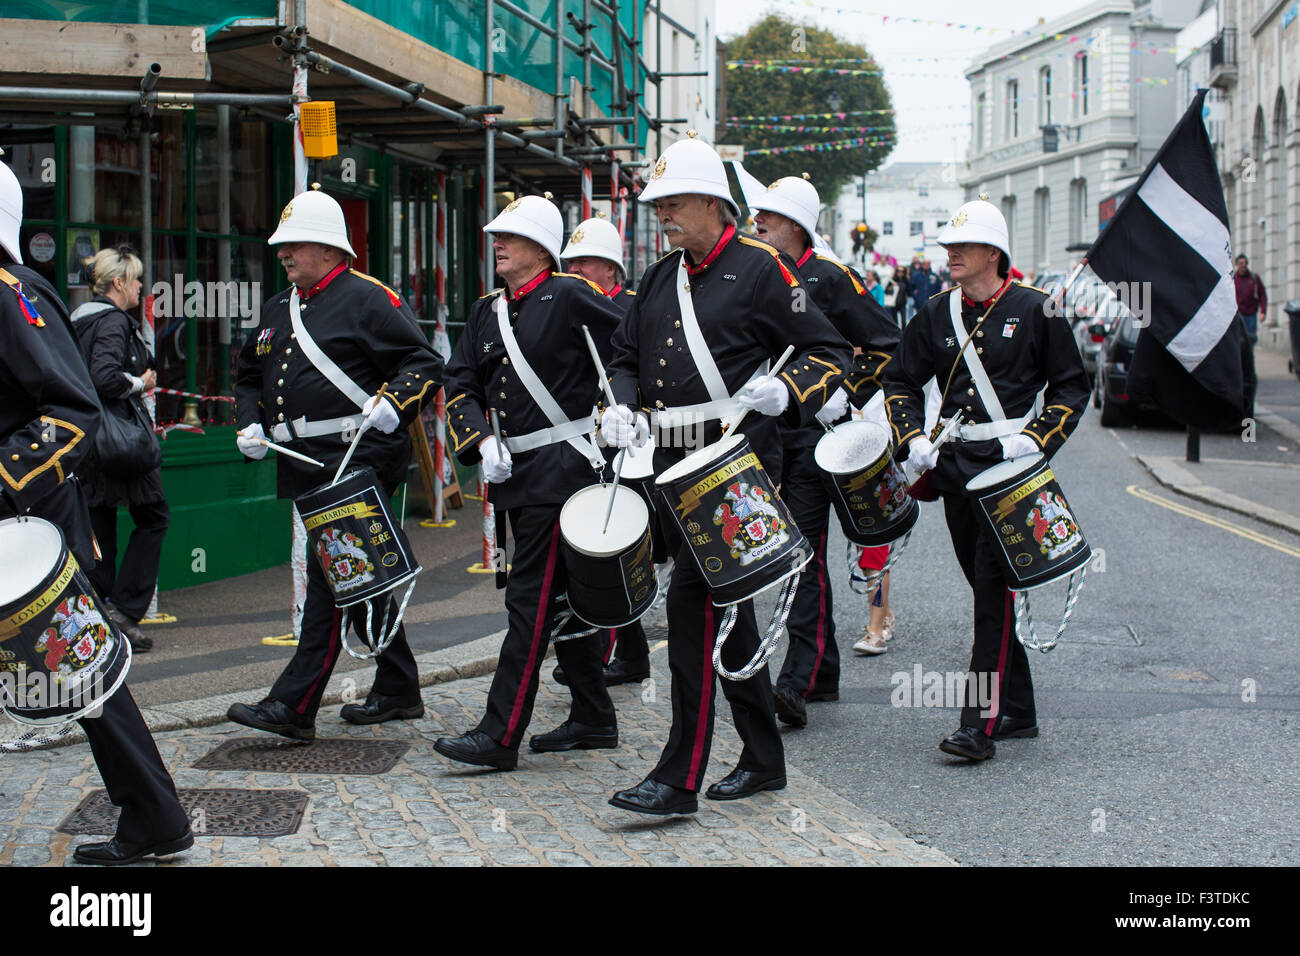 Falmouth Falmouth, marchando por banda marina's High Street en octubre 11th, 2015. Foto de stock